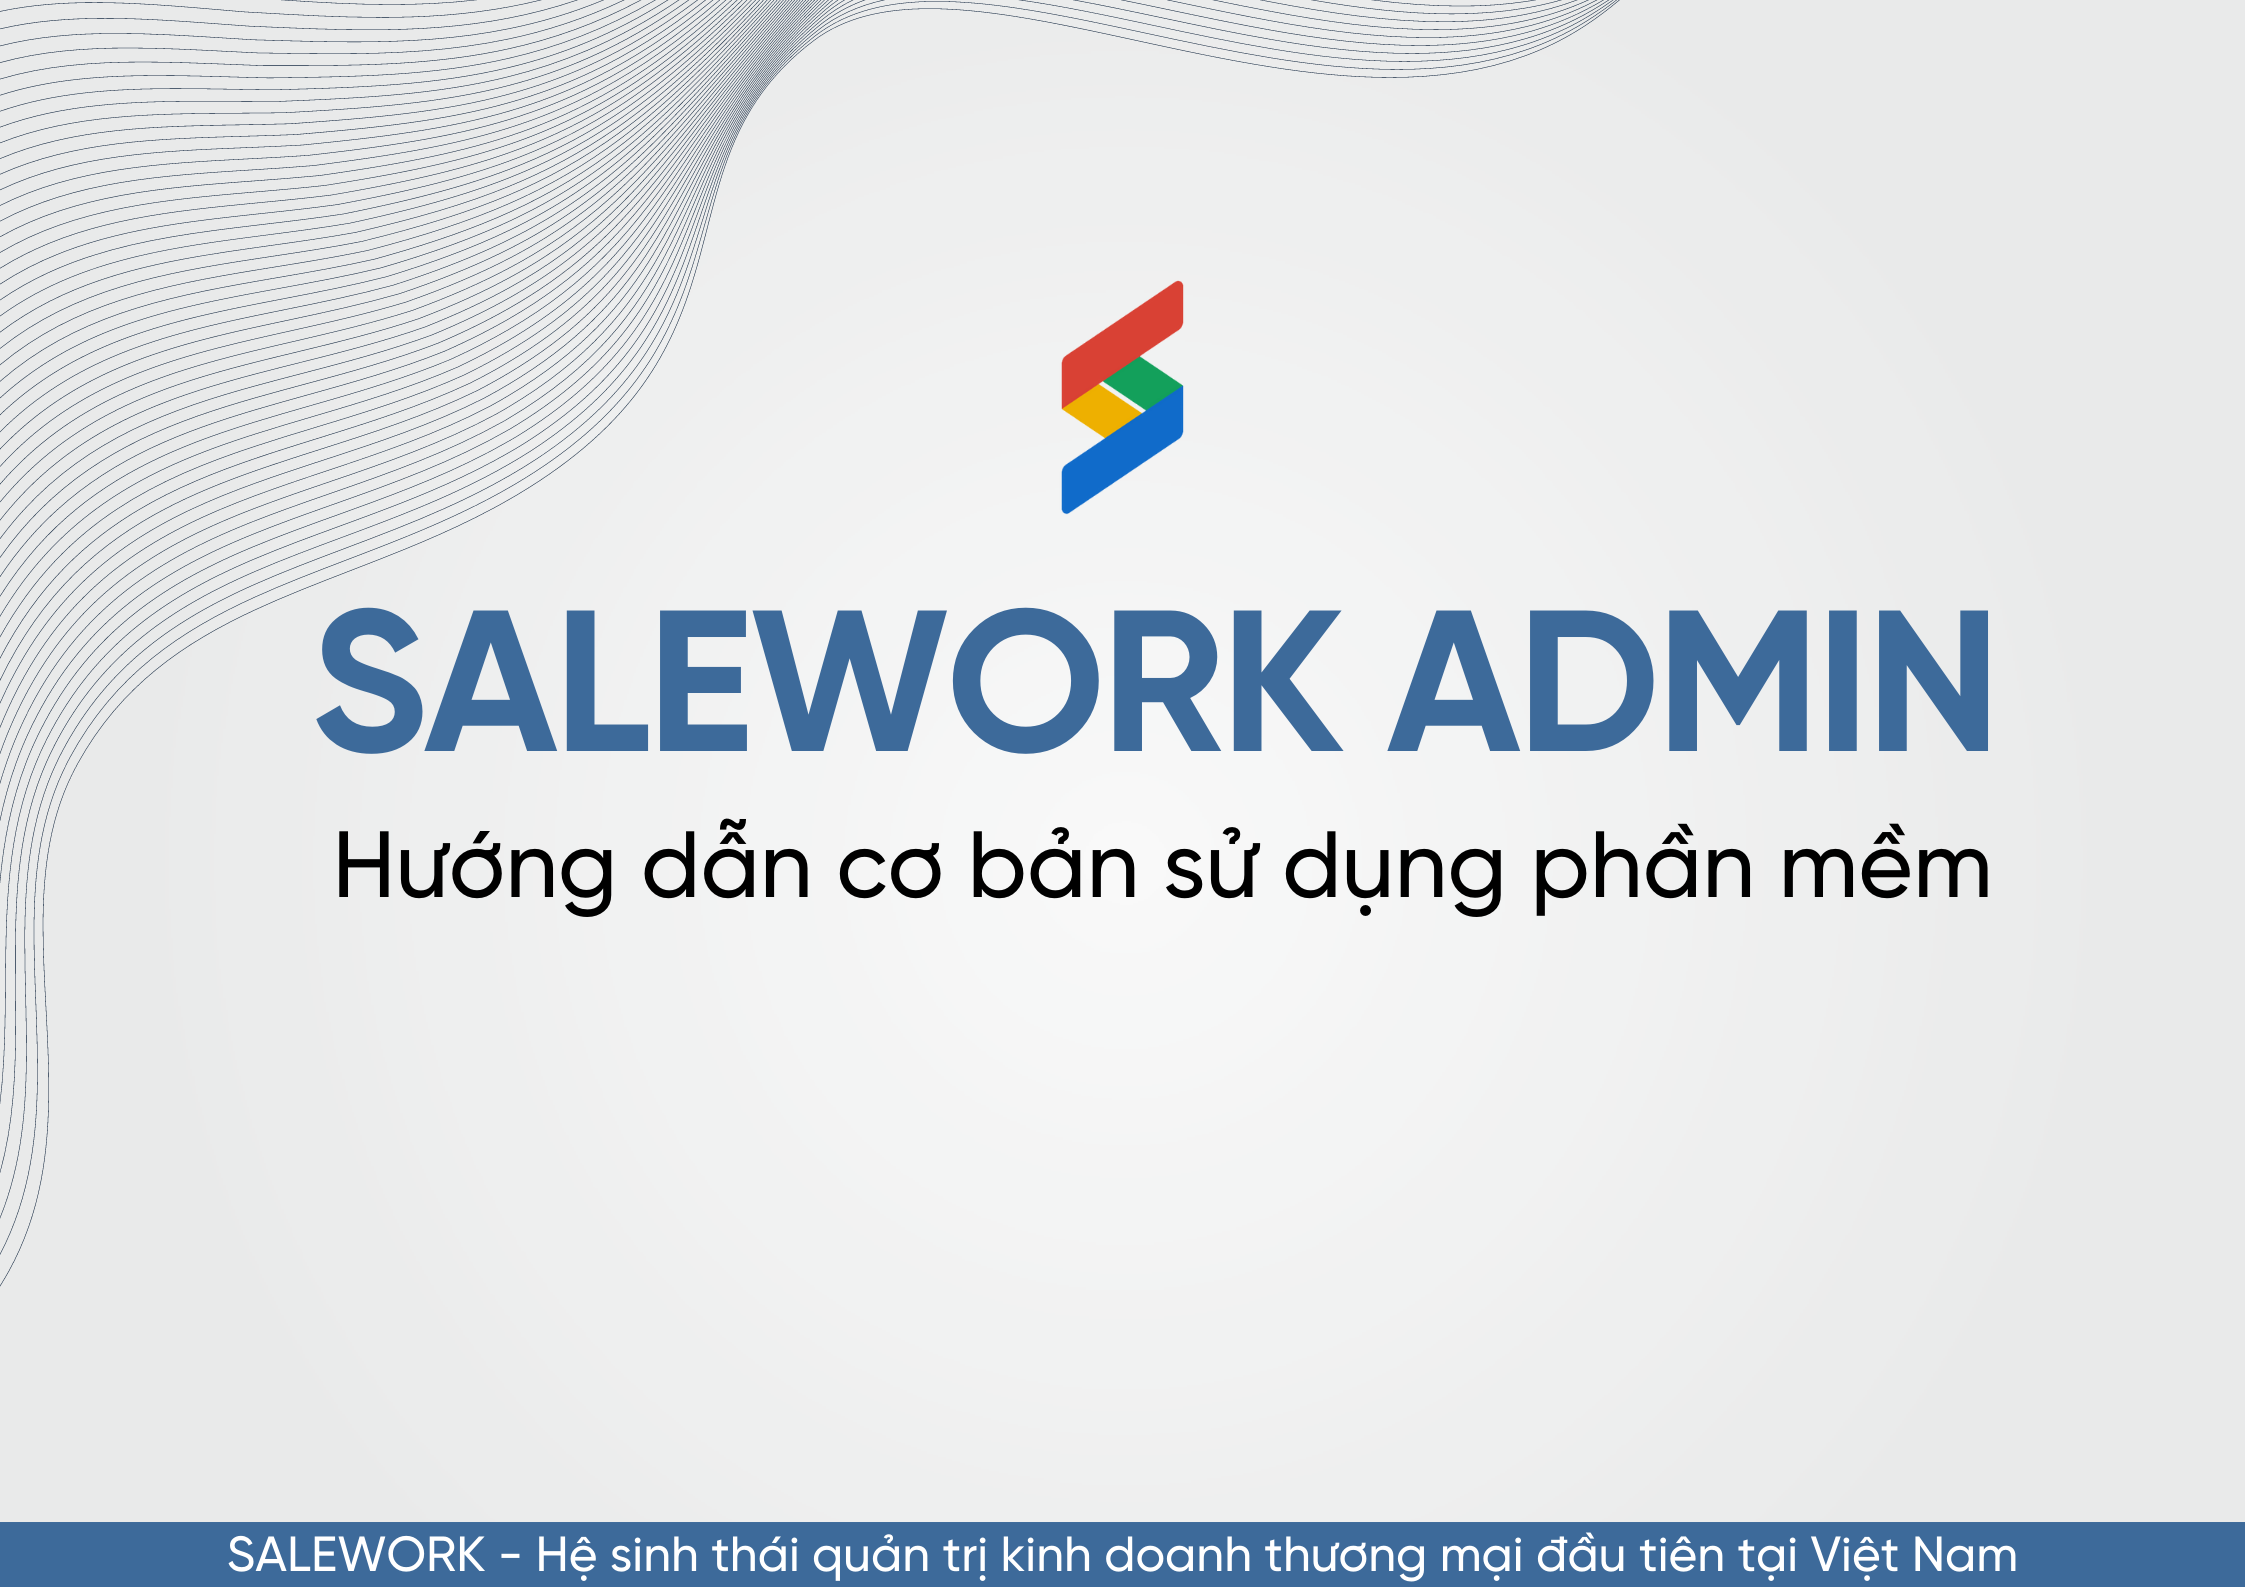 Salework Admin là gì? Hướng dẫn cơ bản sử dụng Salework Admin - 11